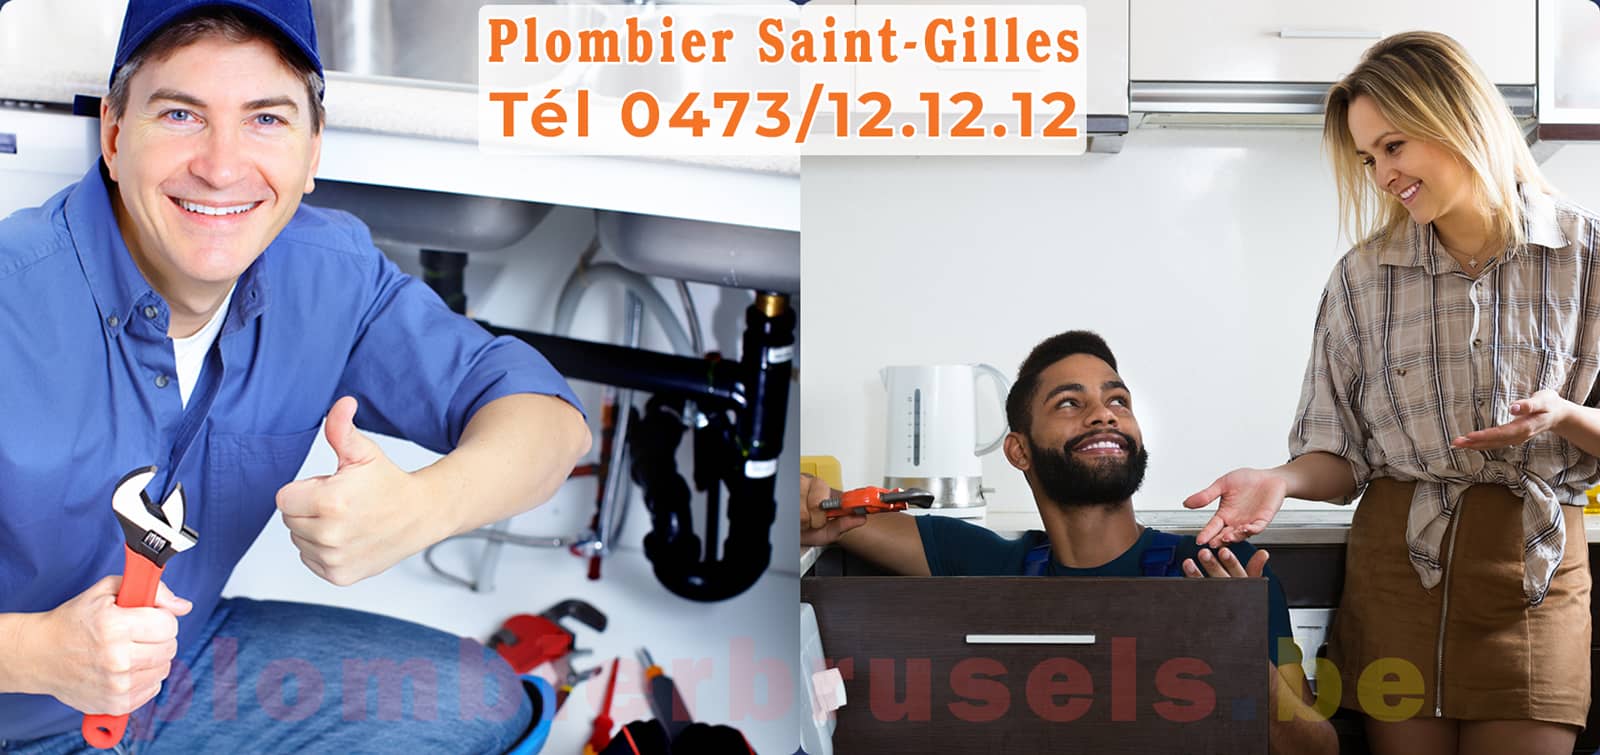 Plombier Saint-Gilles service de Plomberie tél 0473/12.12.12